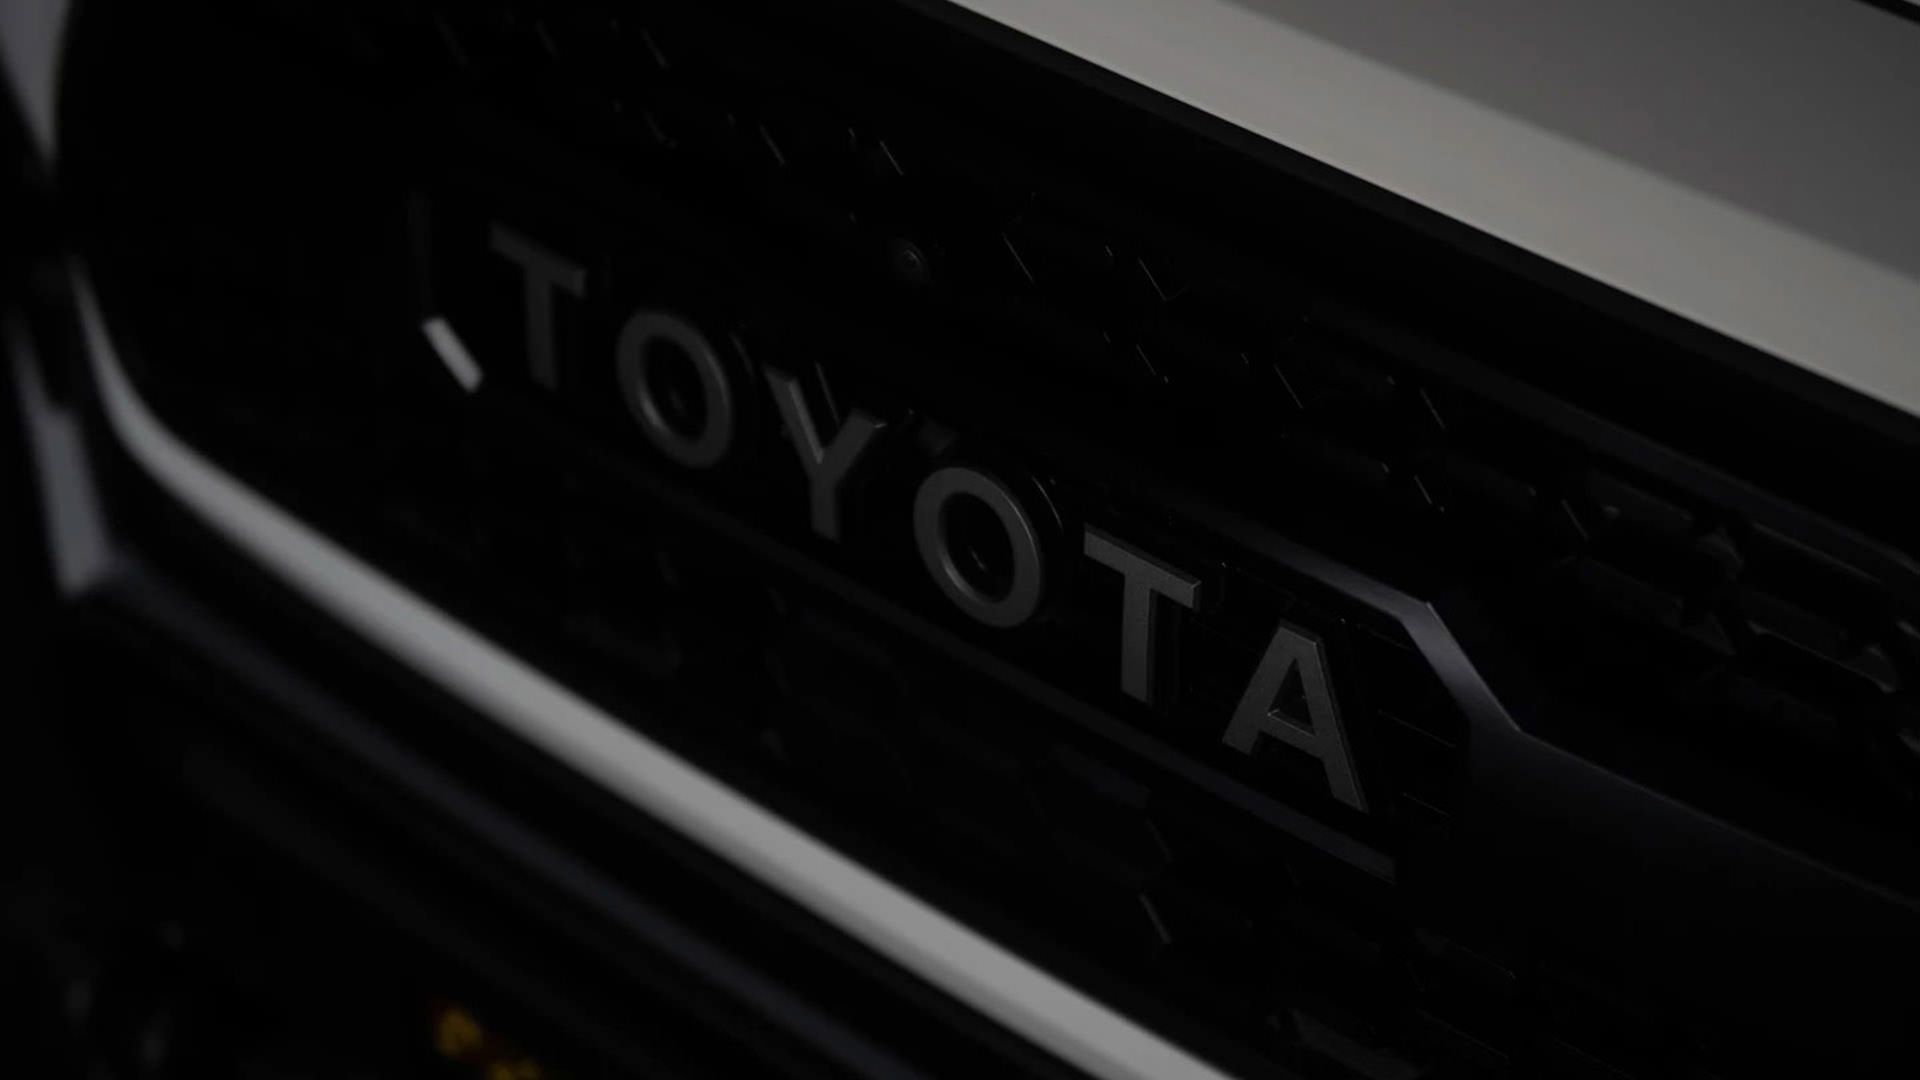 آرم خودروی تفریحی مبتنی بر وانت پیکاپ تویوتا تاکوما / Toyota Tacoma 4x4 RV سفید رنگ